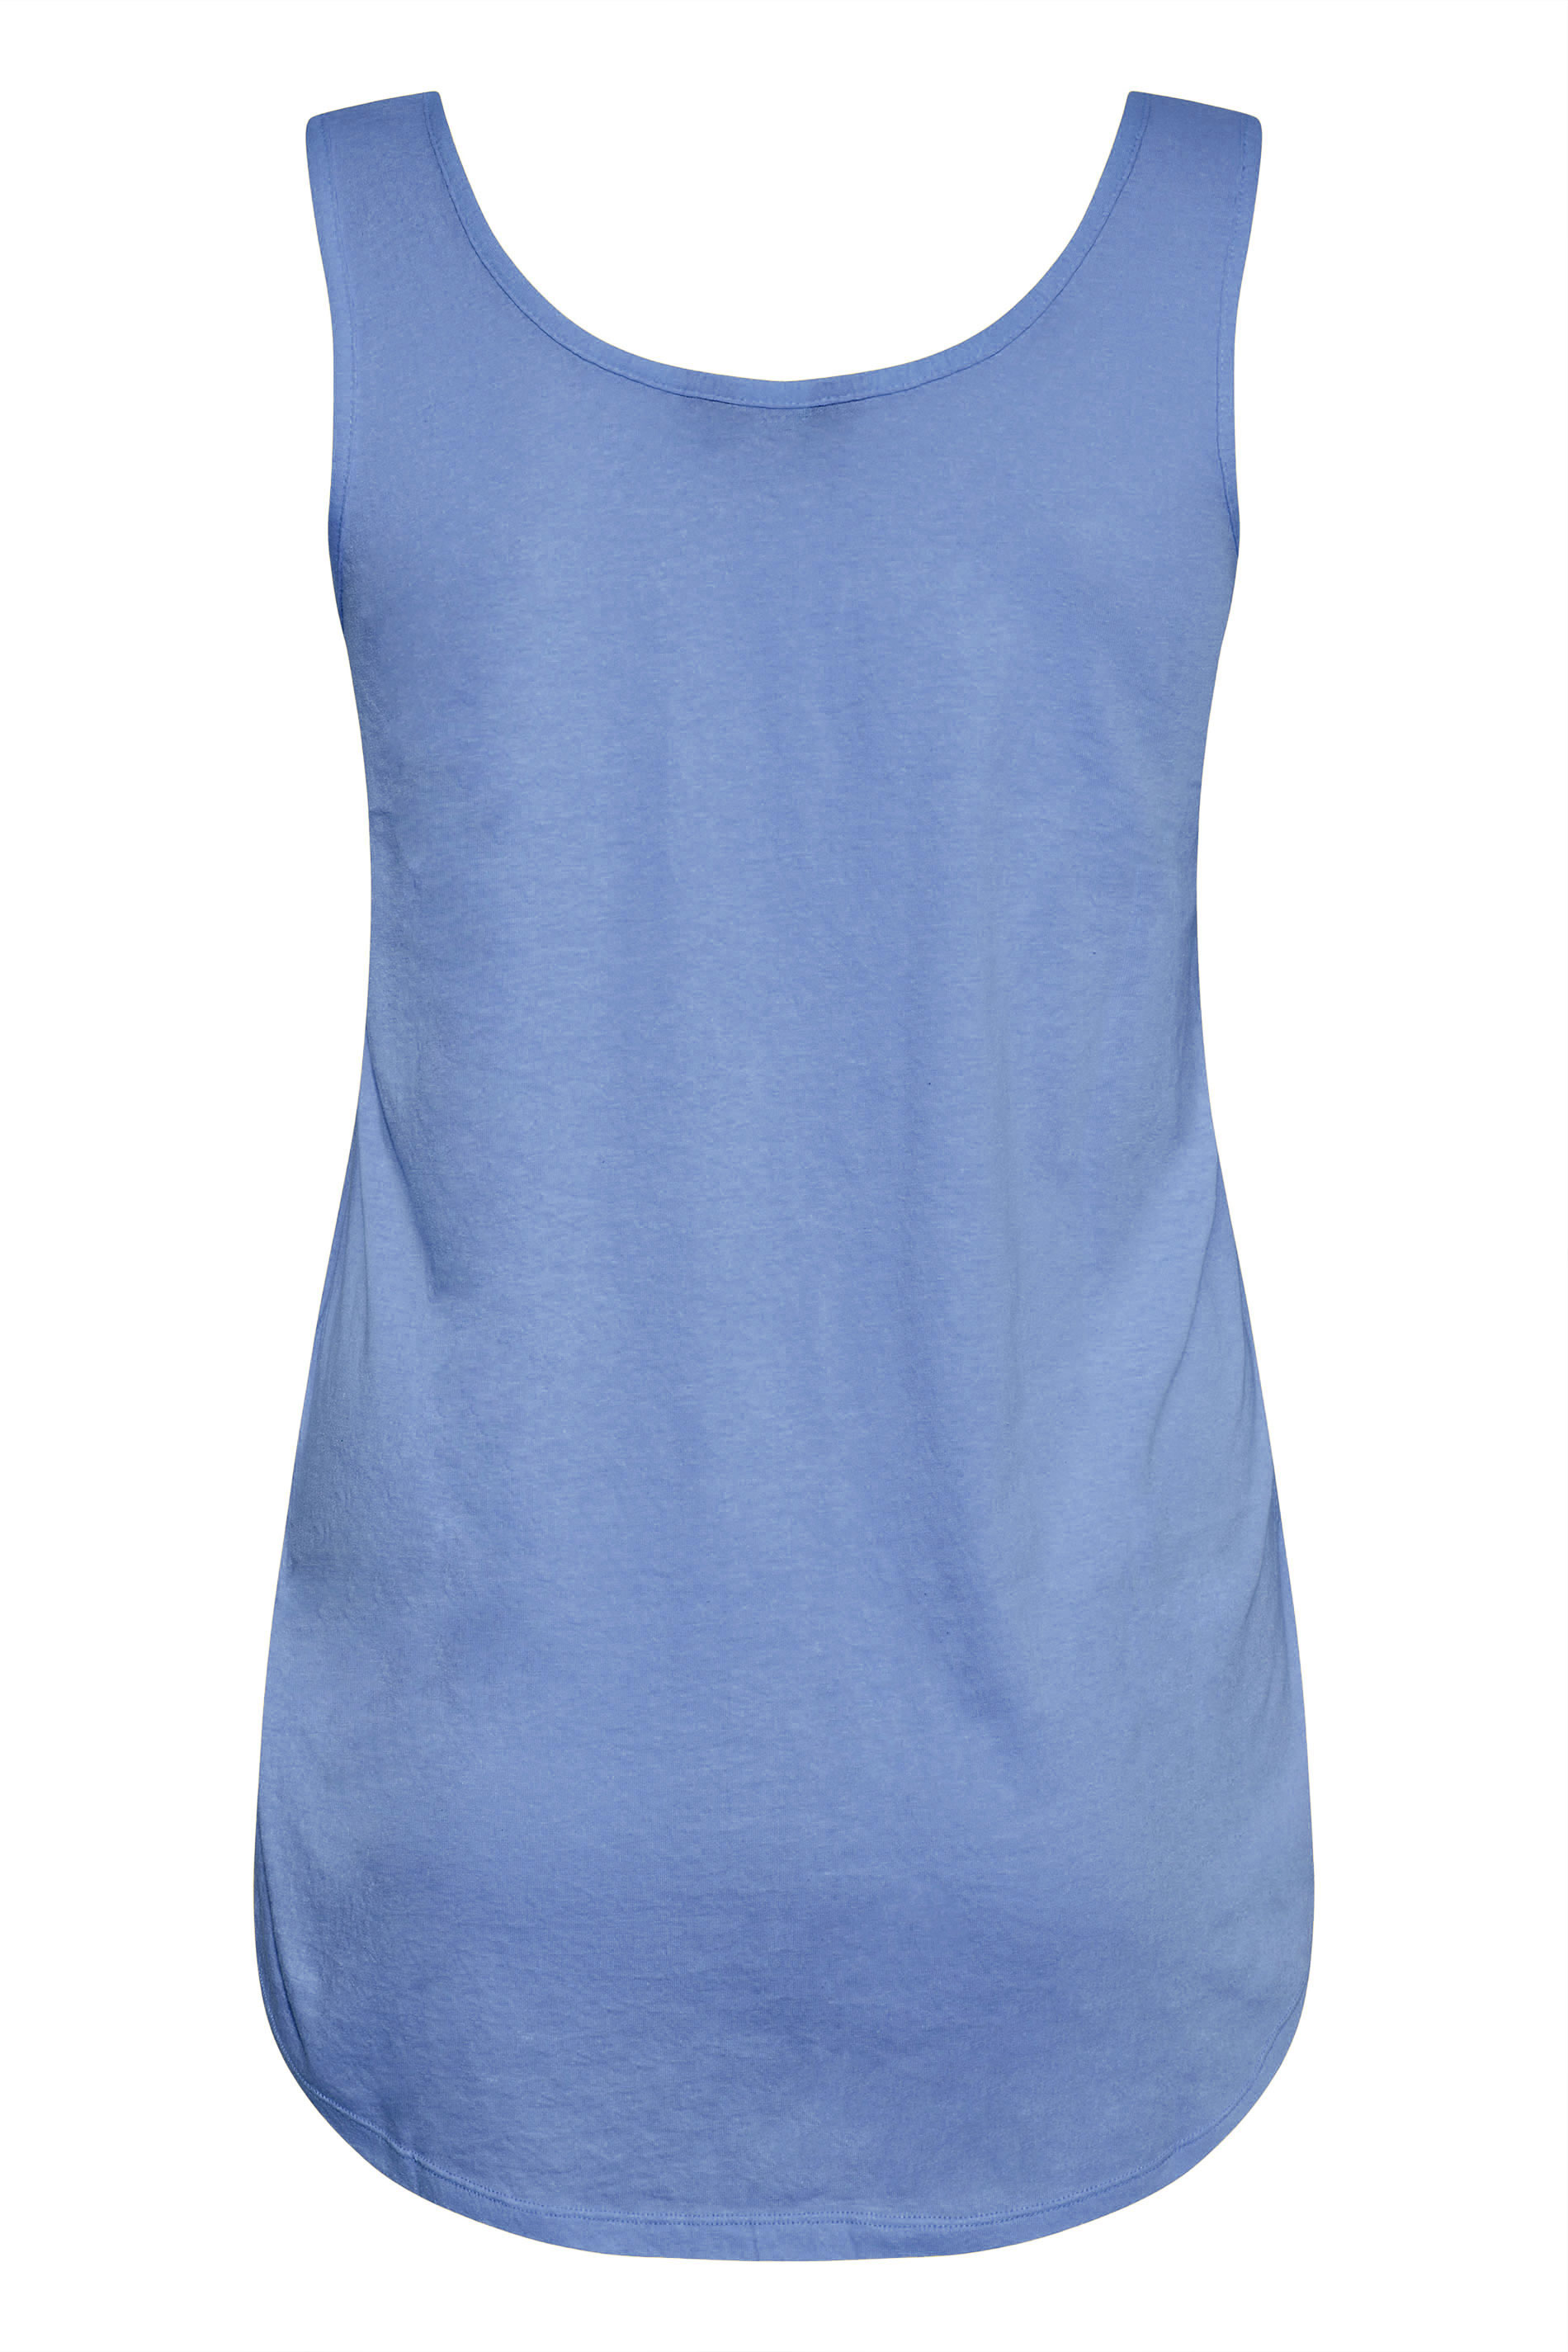 Grande taille  Tops Grande taille  T-Shirts Basiques & Débardeurs | Débardeur Bleu en Jersey - PN87365